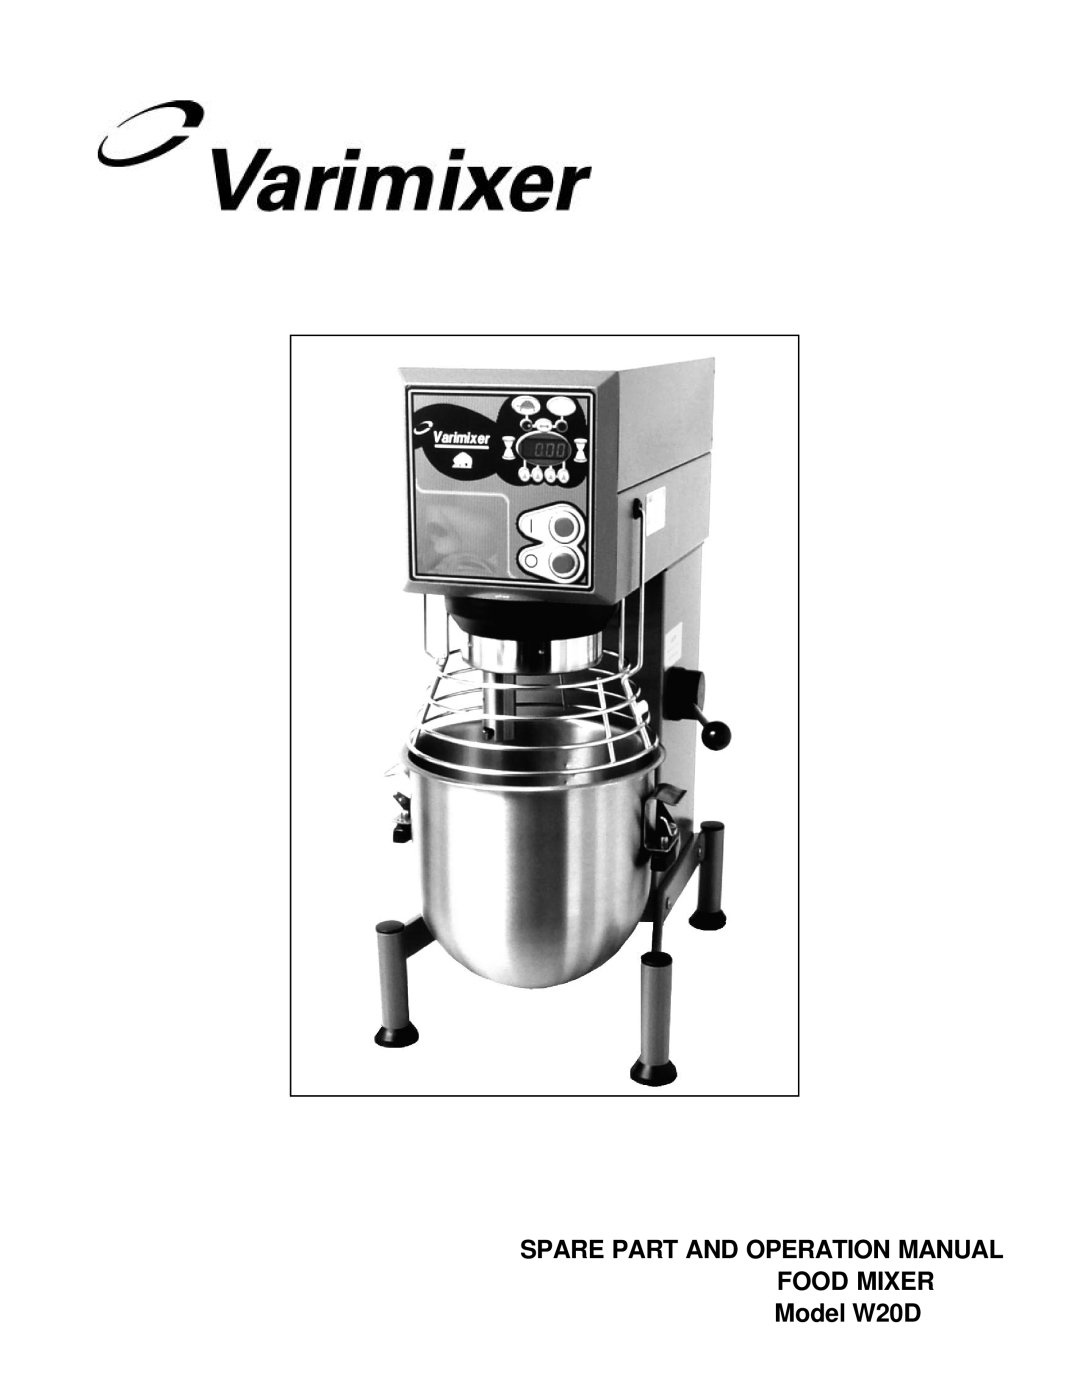 Varimixer operation manual FOOD MIXER Model W20D 